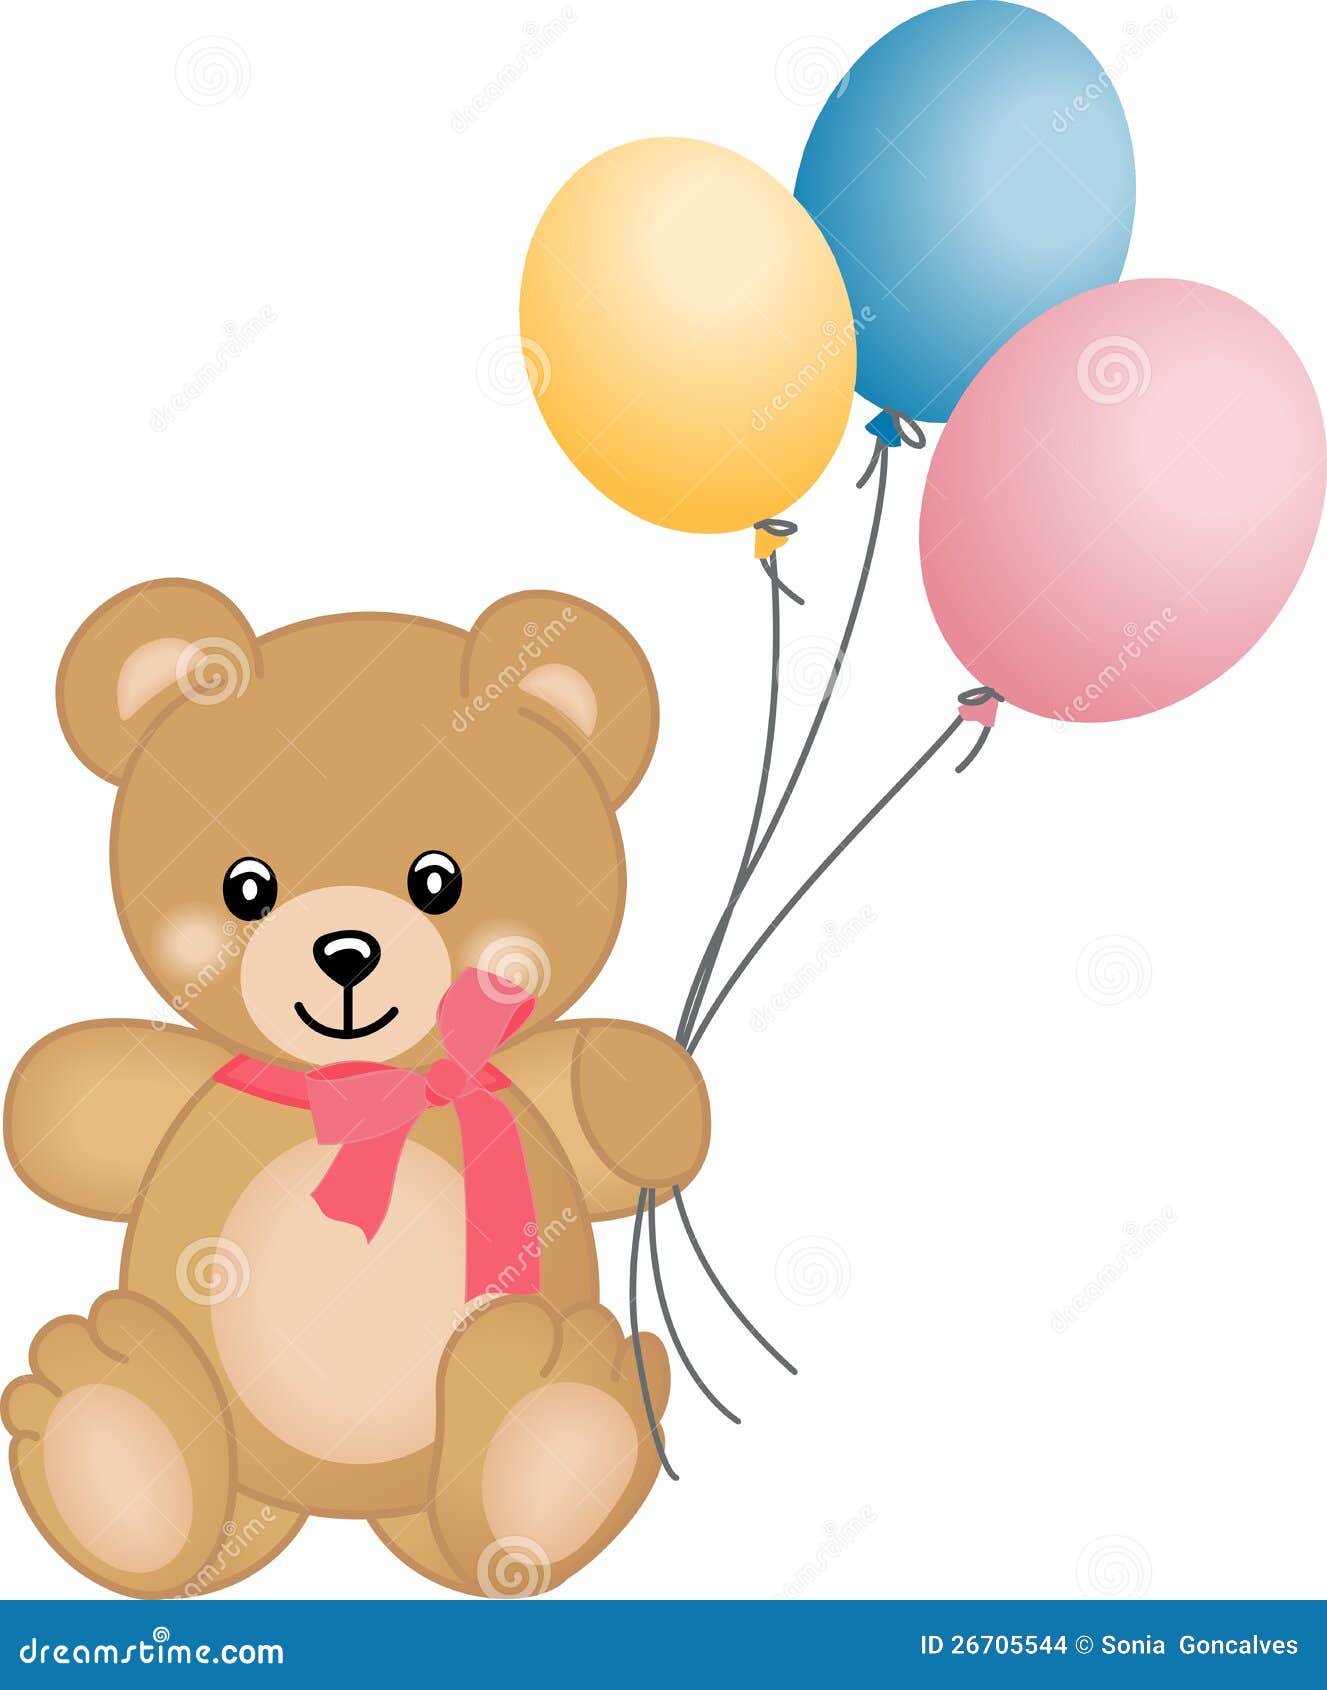 teddy bear holding balloons clipart - photo #7